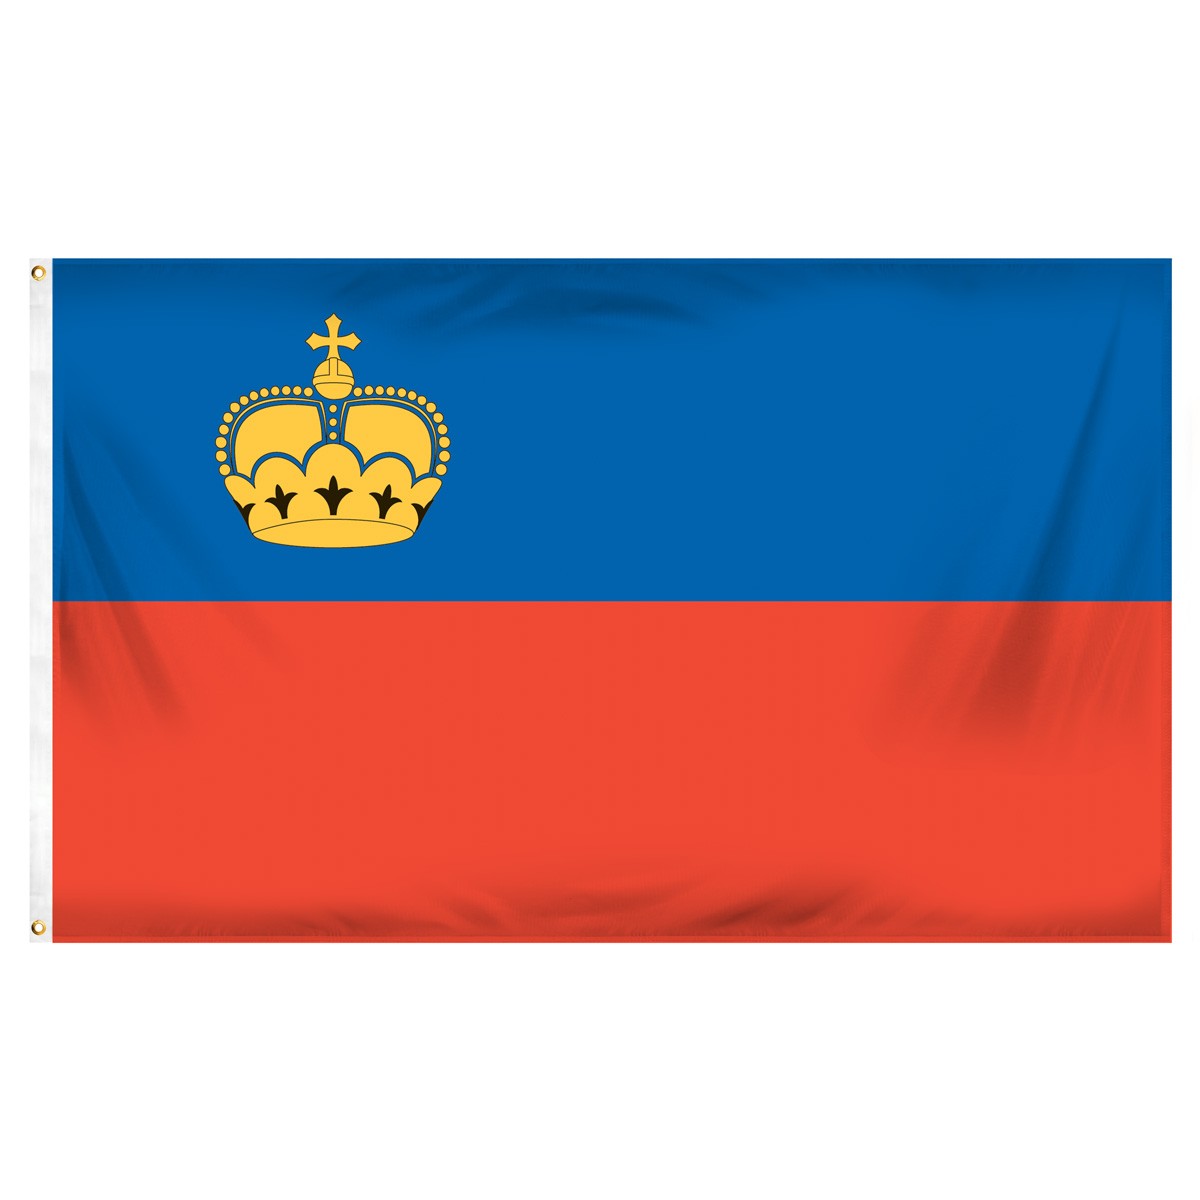 Liechtenstein Table Flag